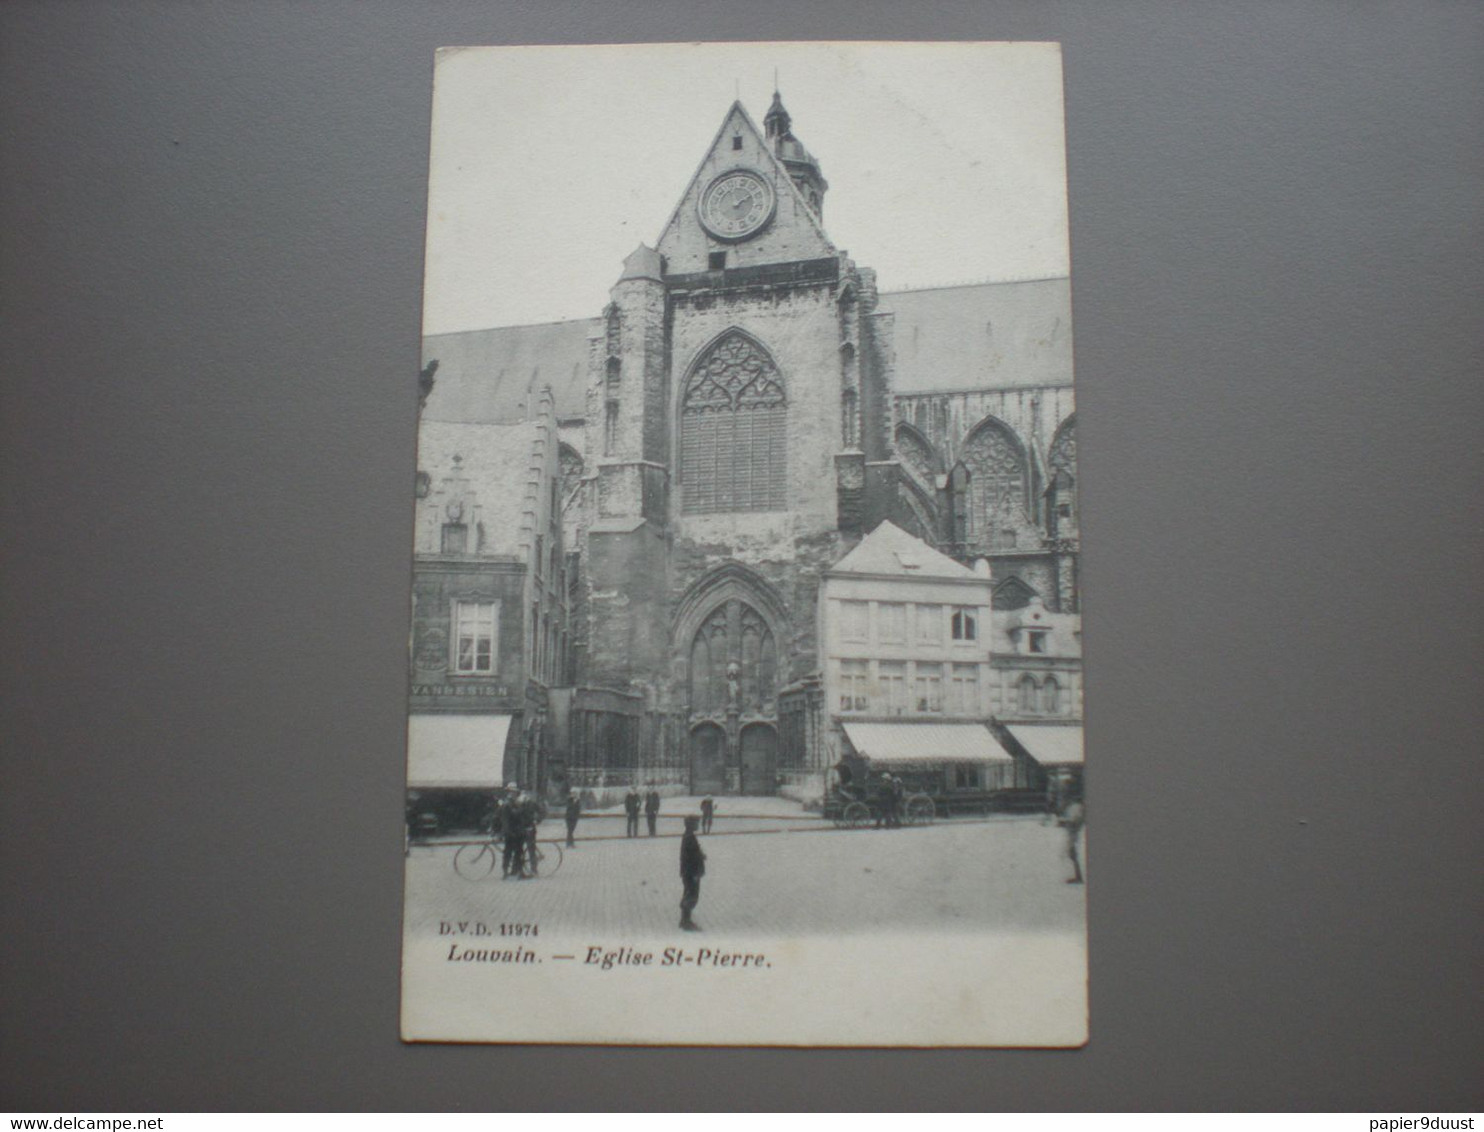 LOUVAIN 1908 - EGLISE ST-PIERRE - D.V.D. 11974 - Leuven